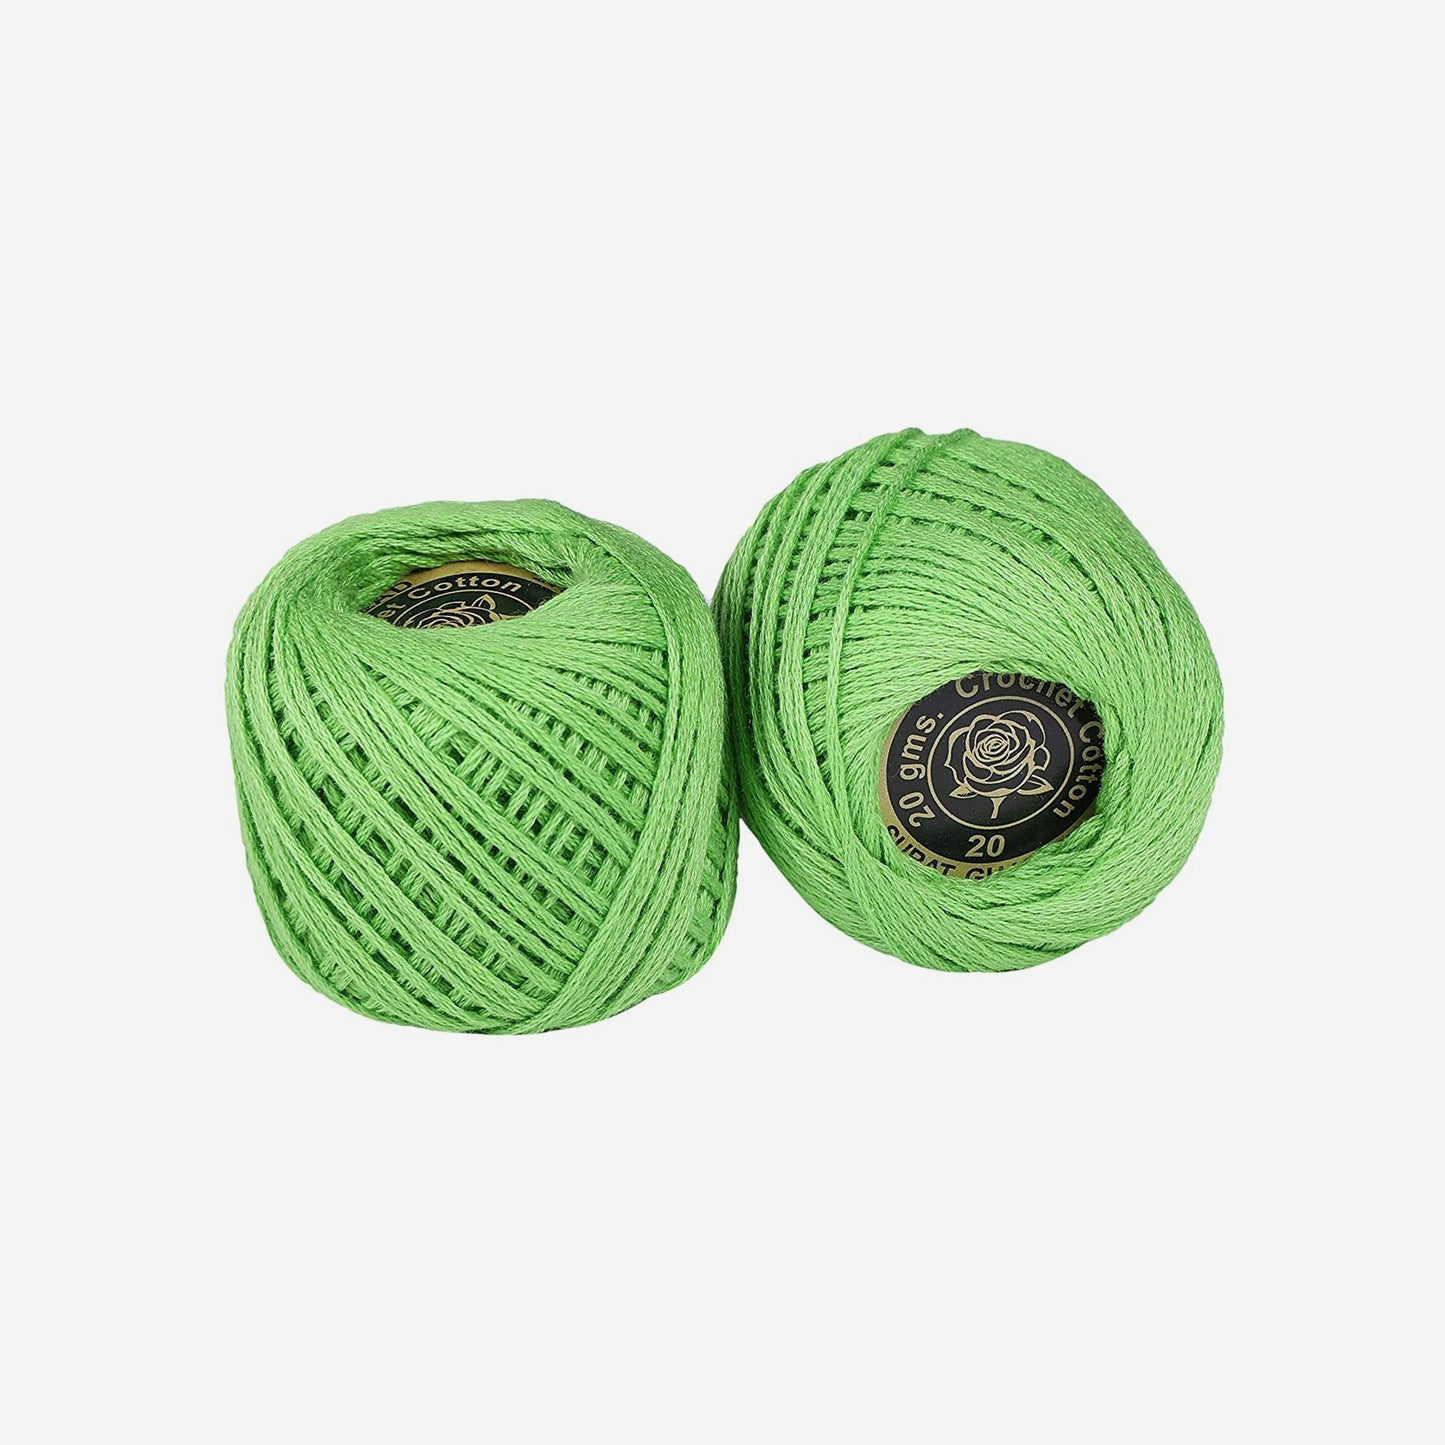 Hand-crochet hoops (Variation 20)